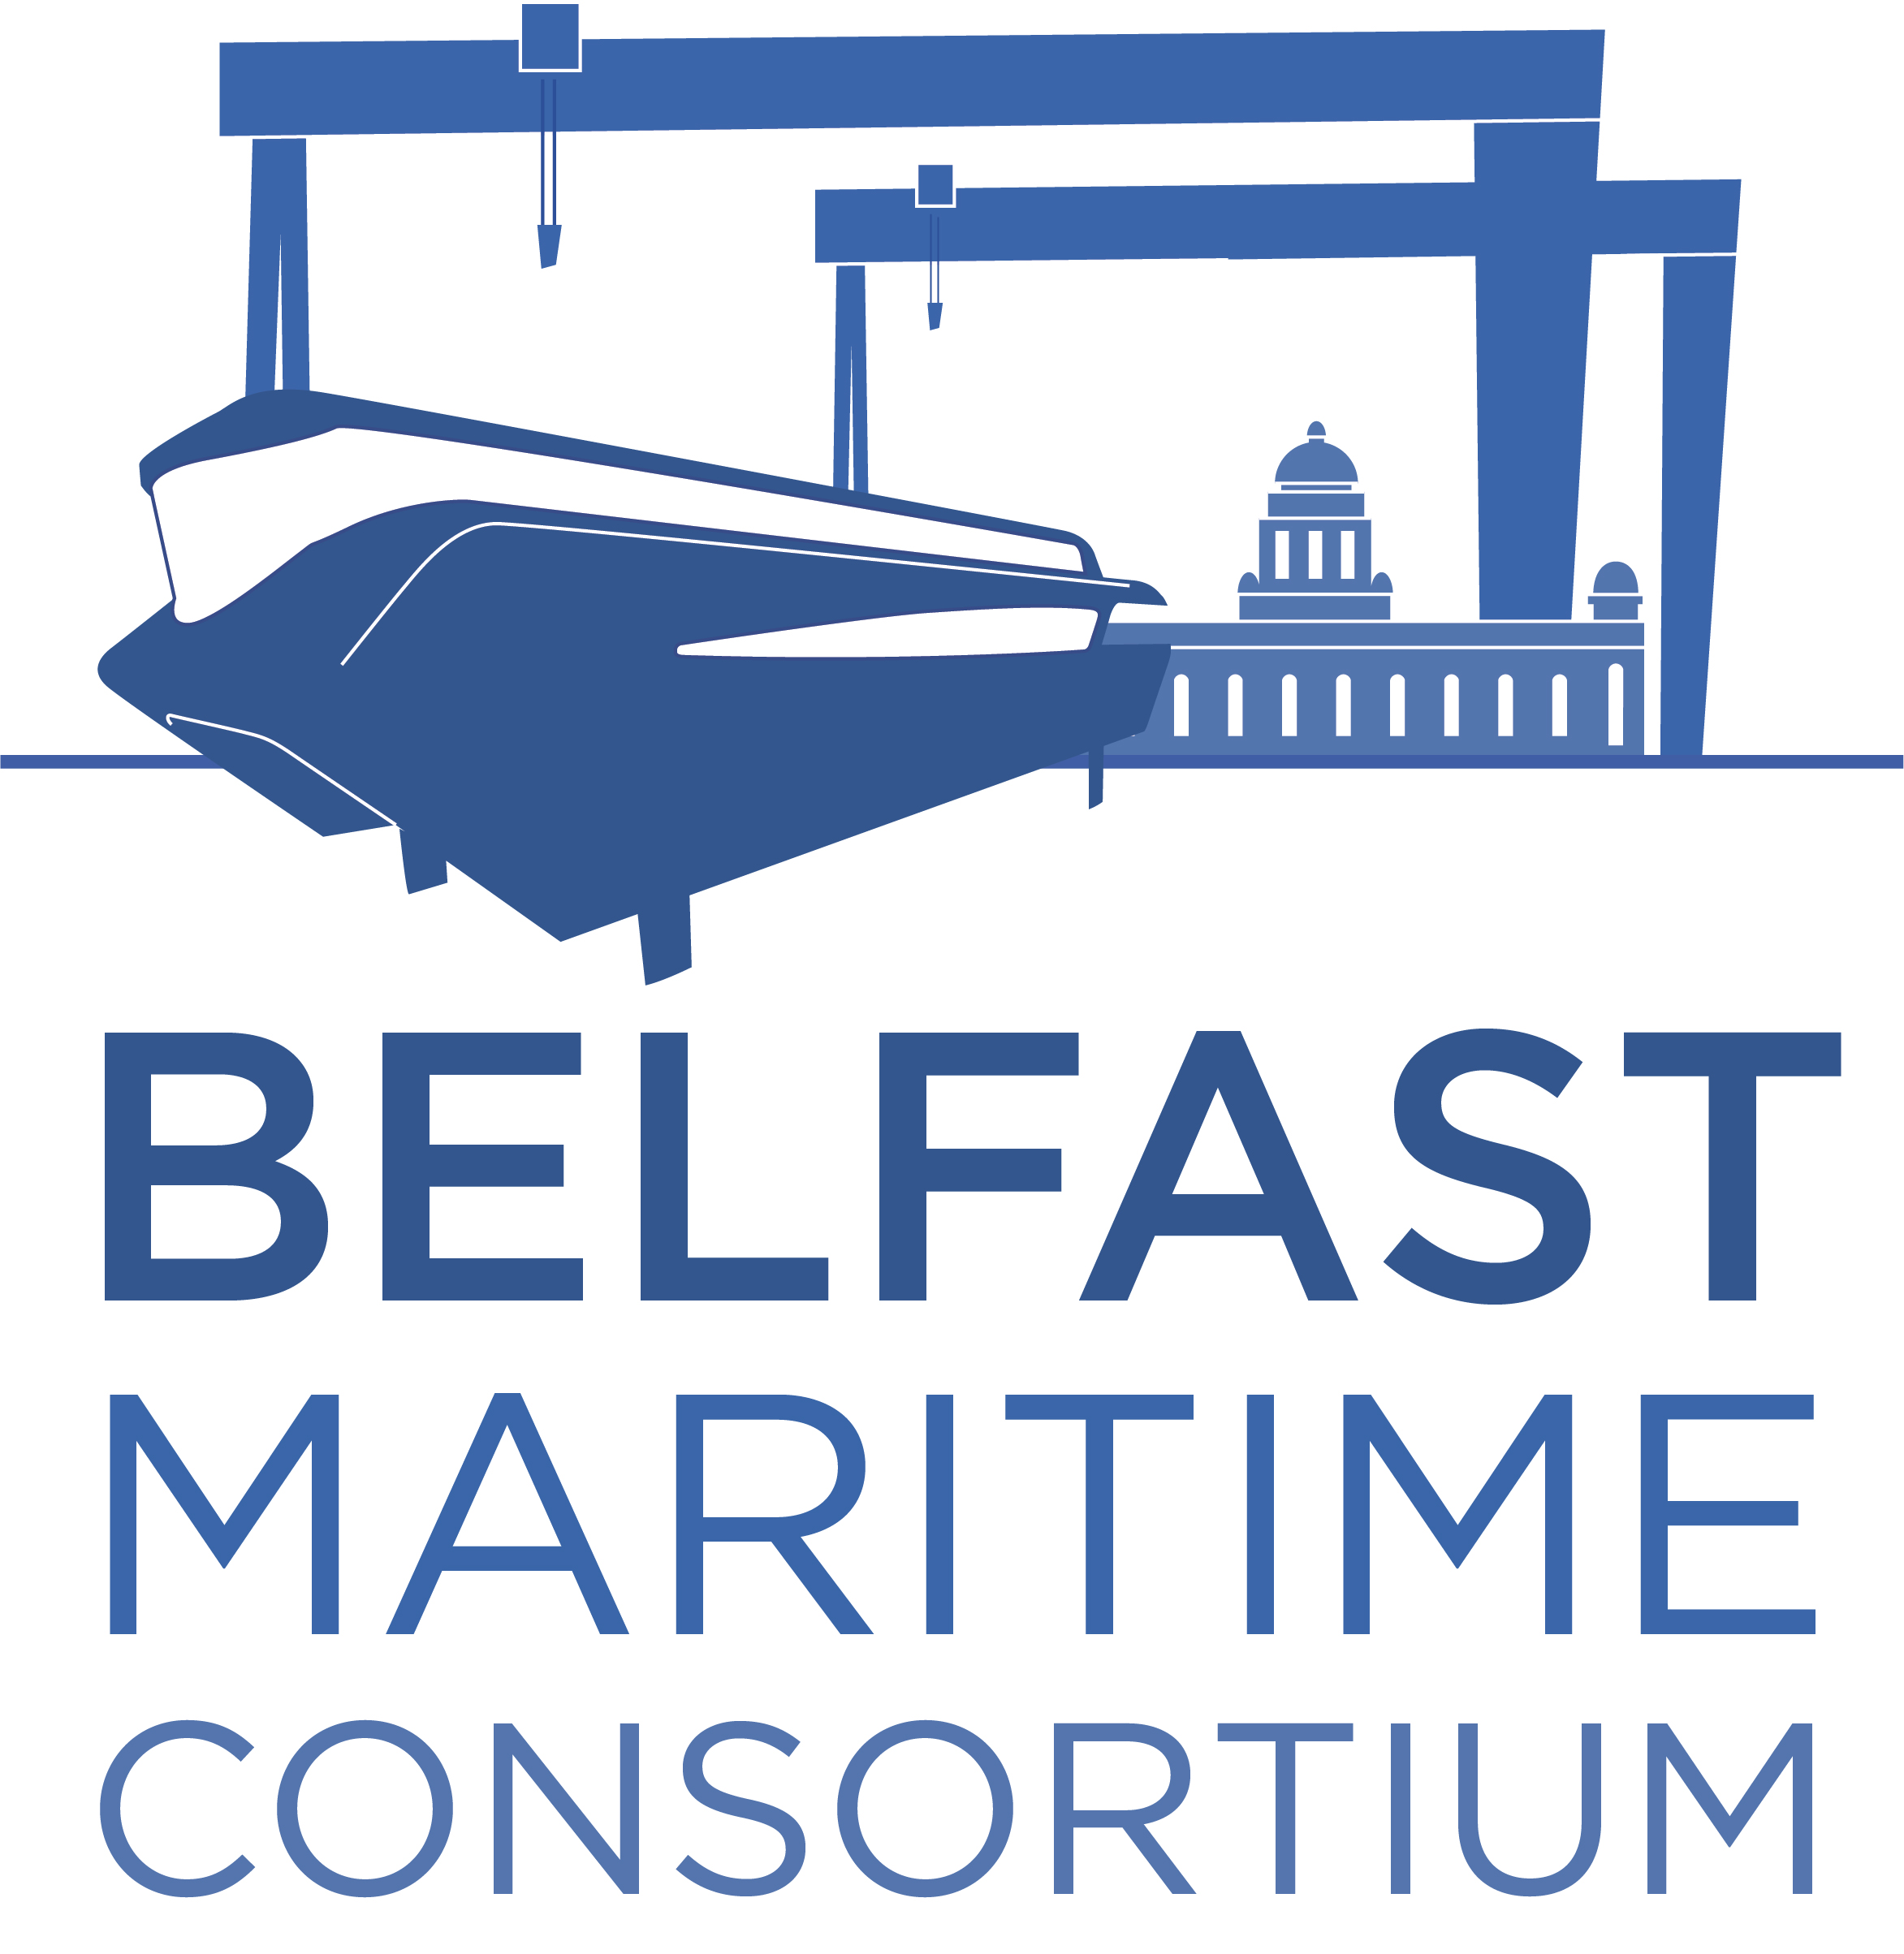 Belfast Maritime Consortium logo